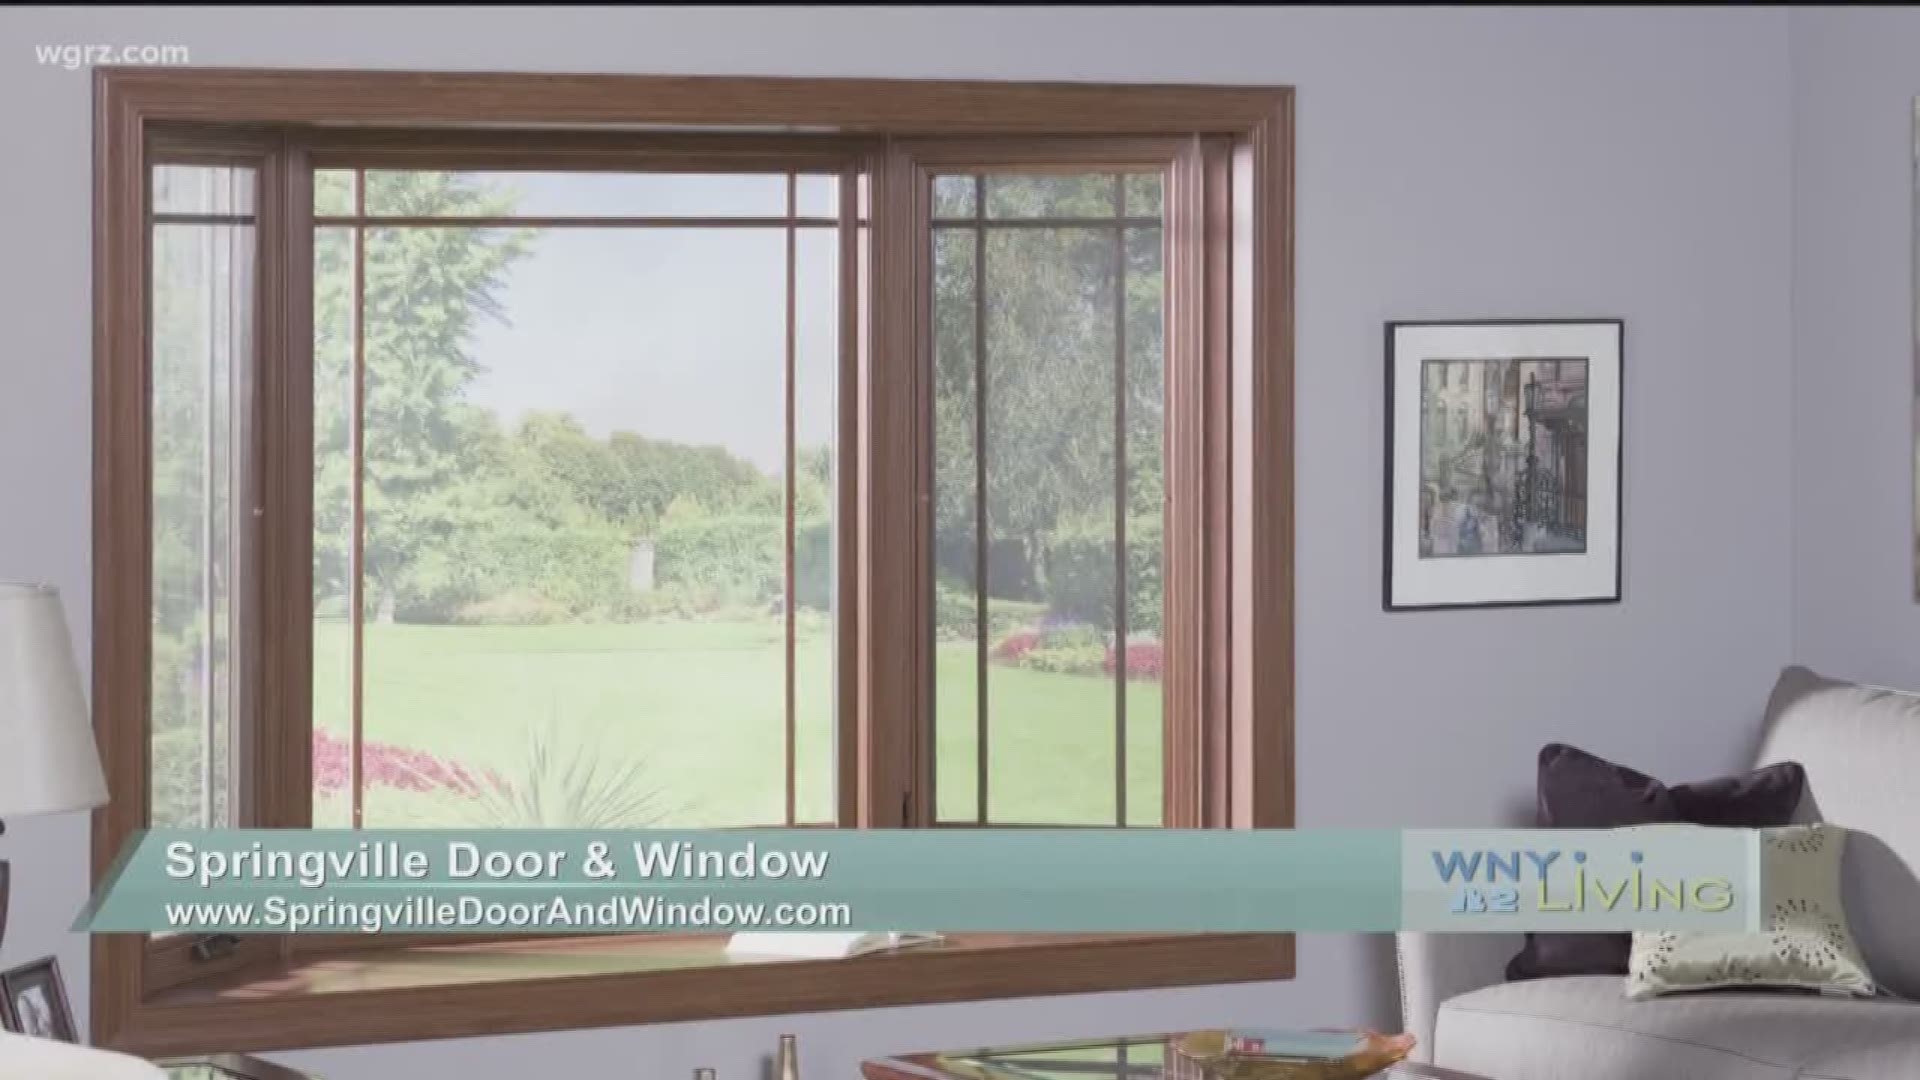 WNY Living - July 7 - Springville Door & Window